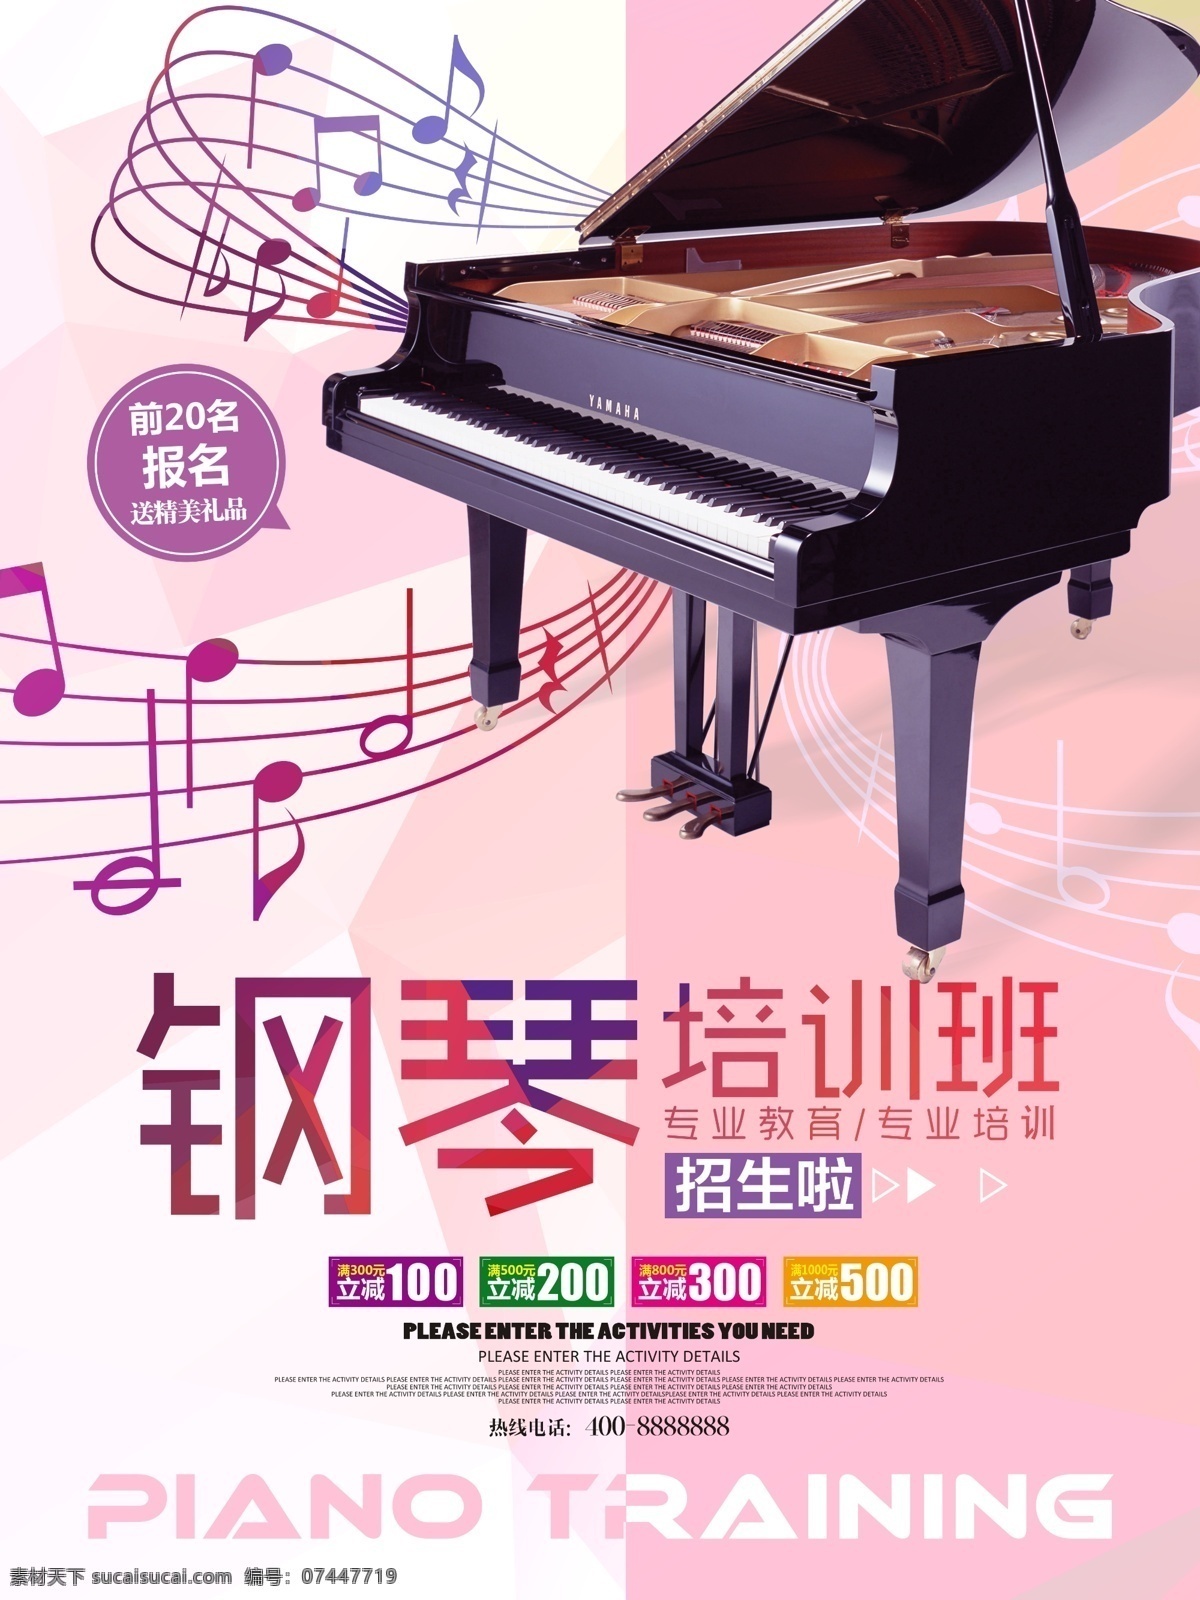 钢琴海报 钢琴 乐器 乐器海报 音乐 音乐海报 琴 海报类单页类